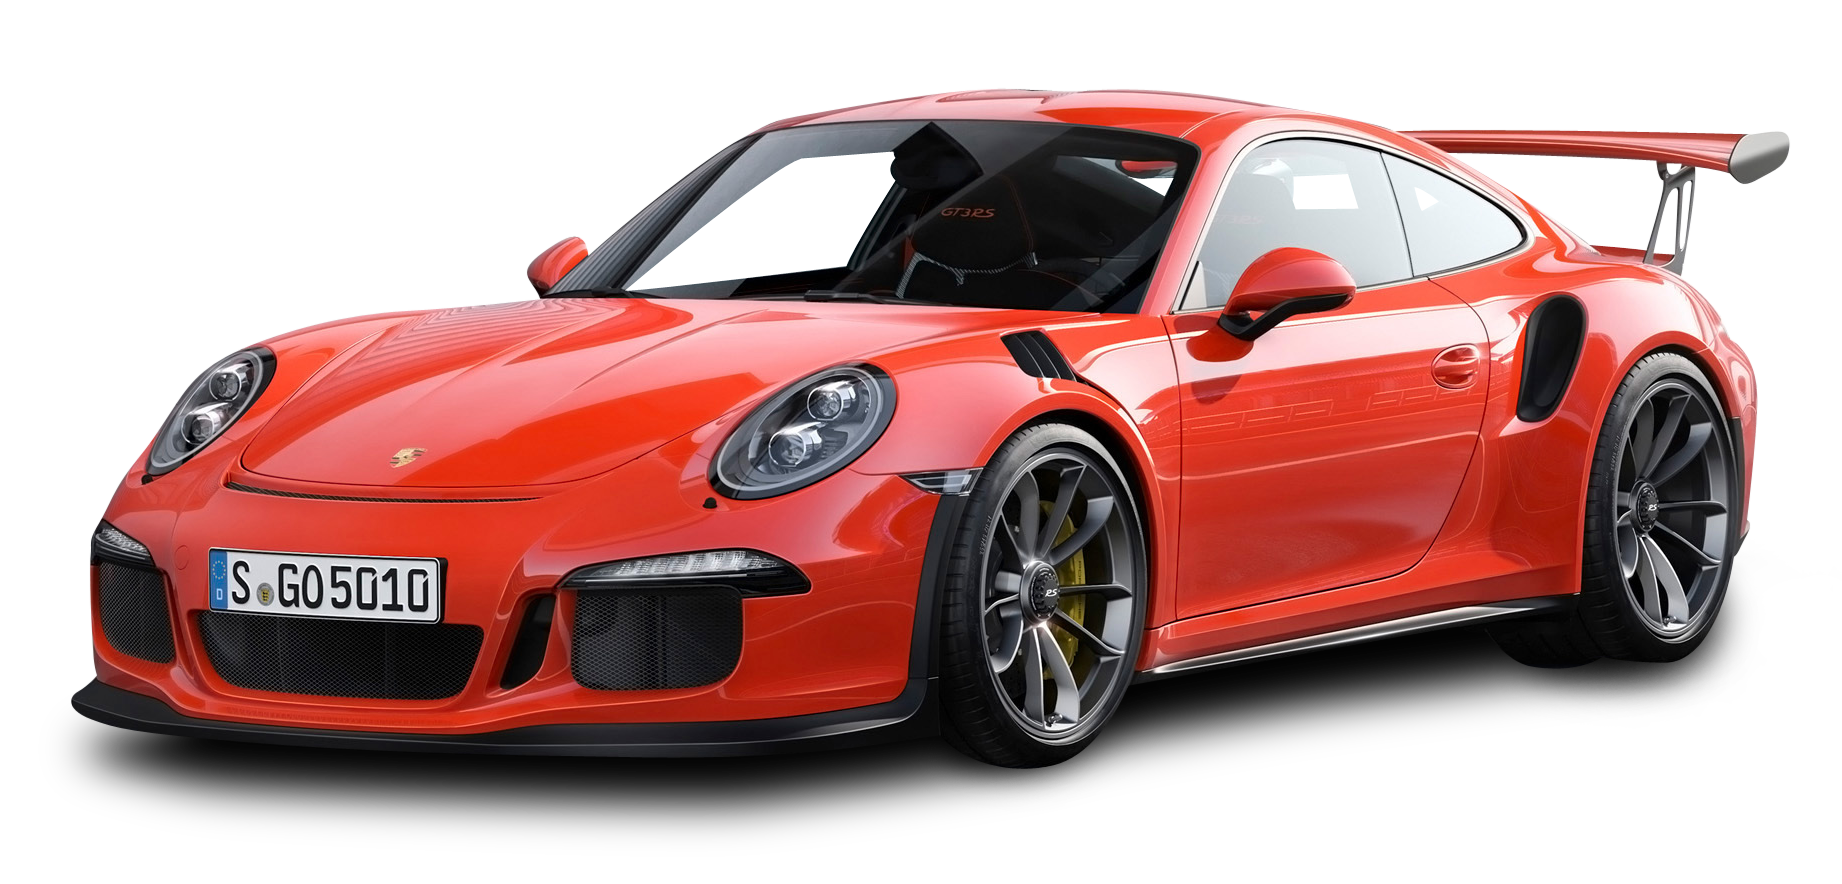 Red Porsche 911 Gt3 Rs 4 Car Png Image - Porsche, Transparent background PNG HD thumbnail